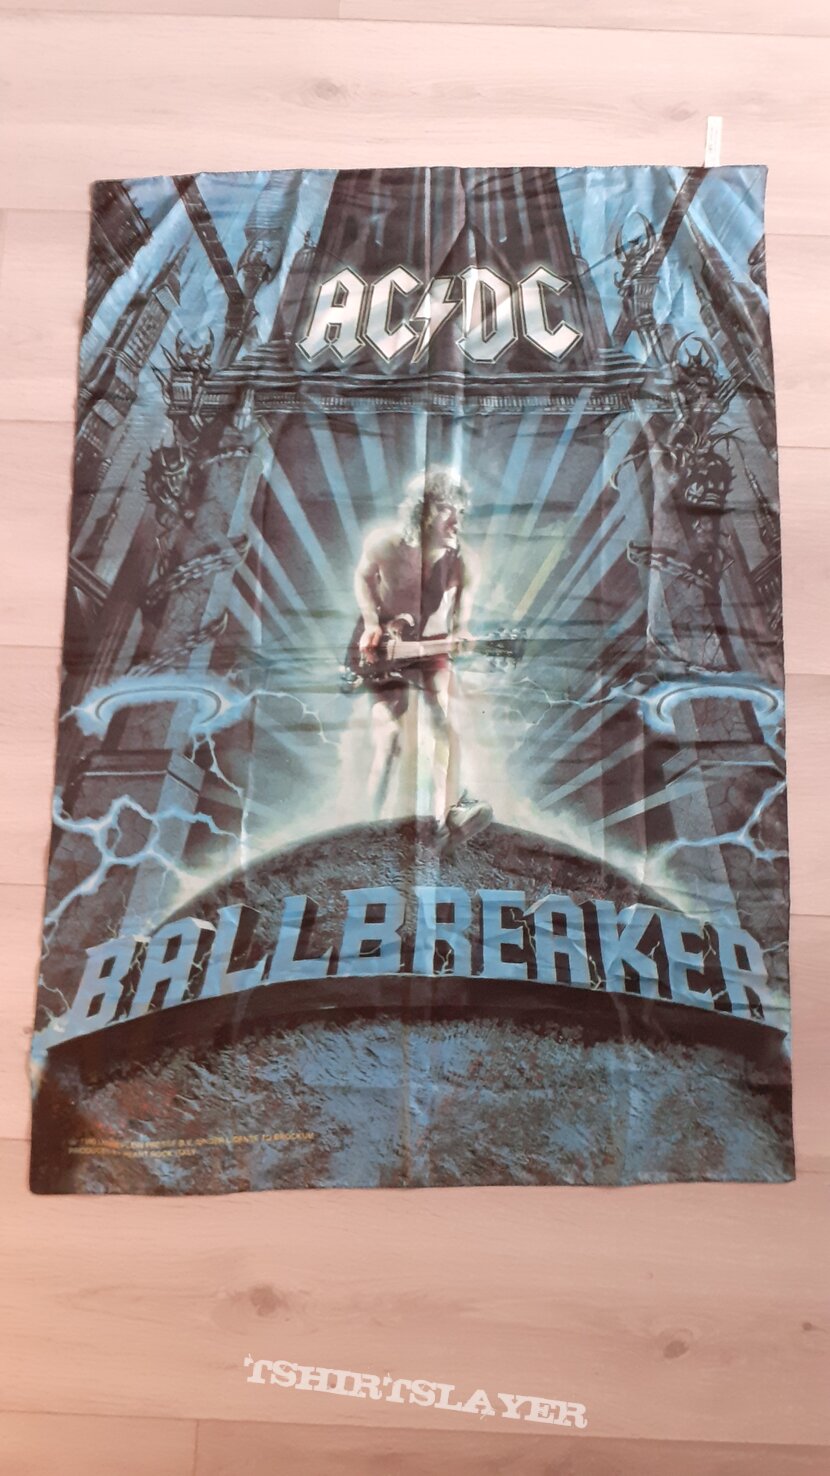 AC/DC Ballbreaker flag